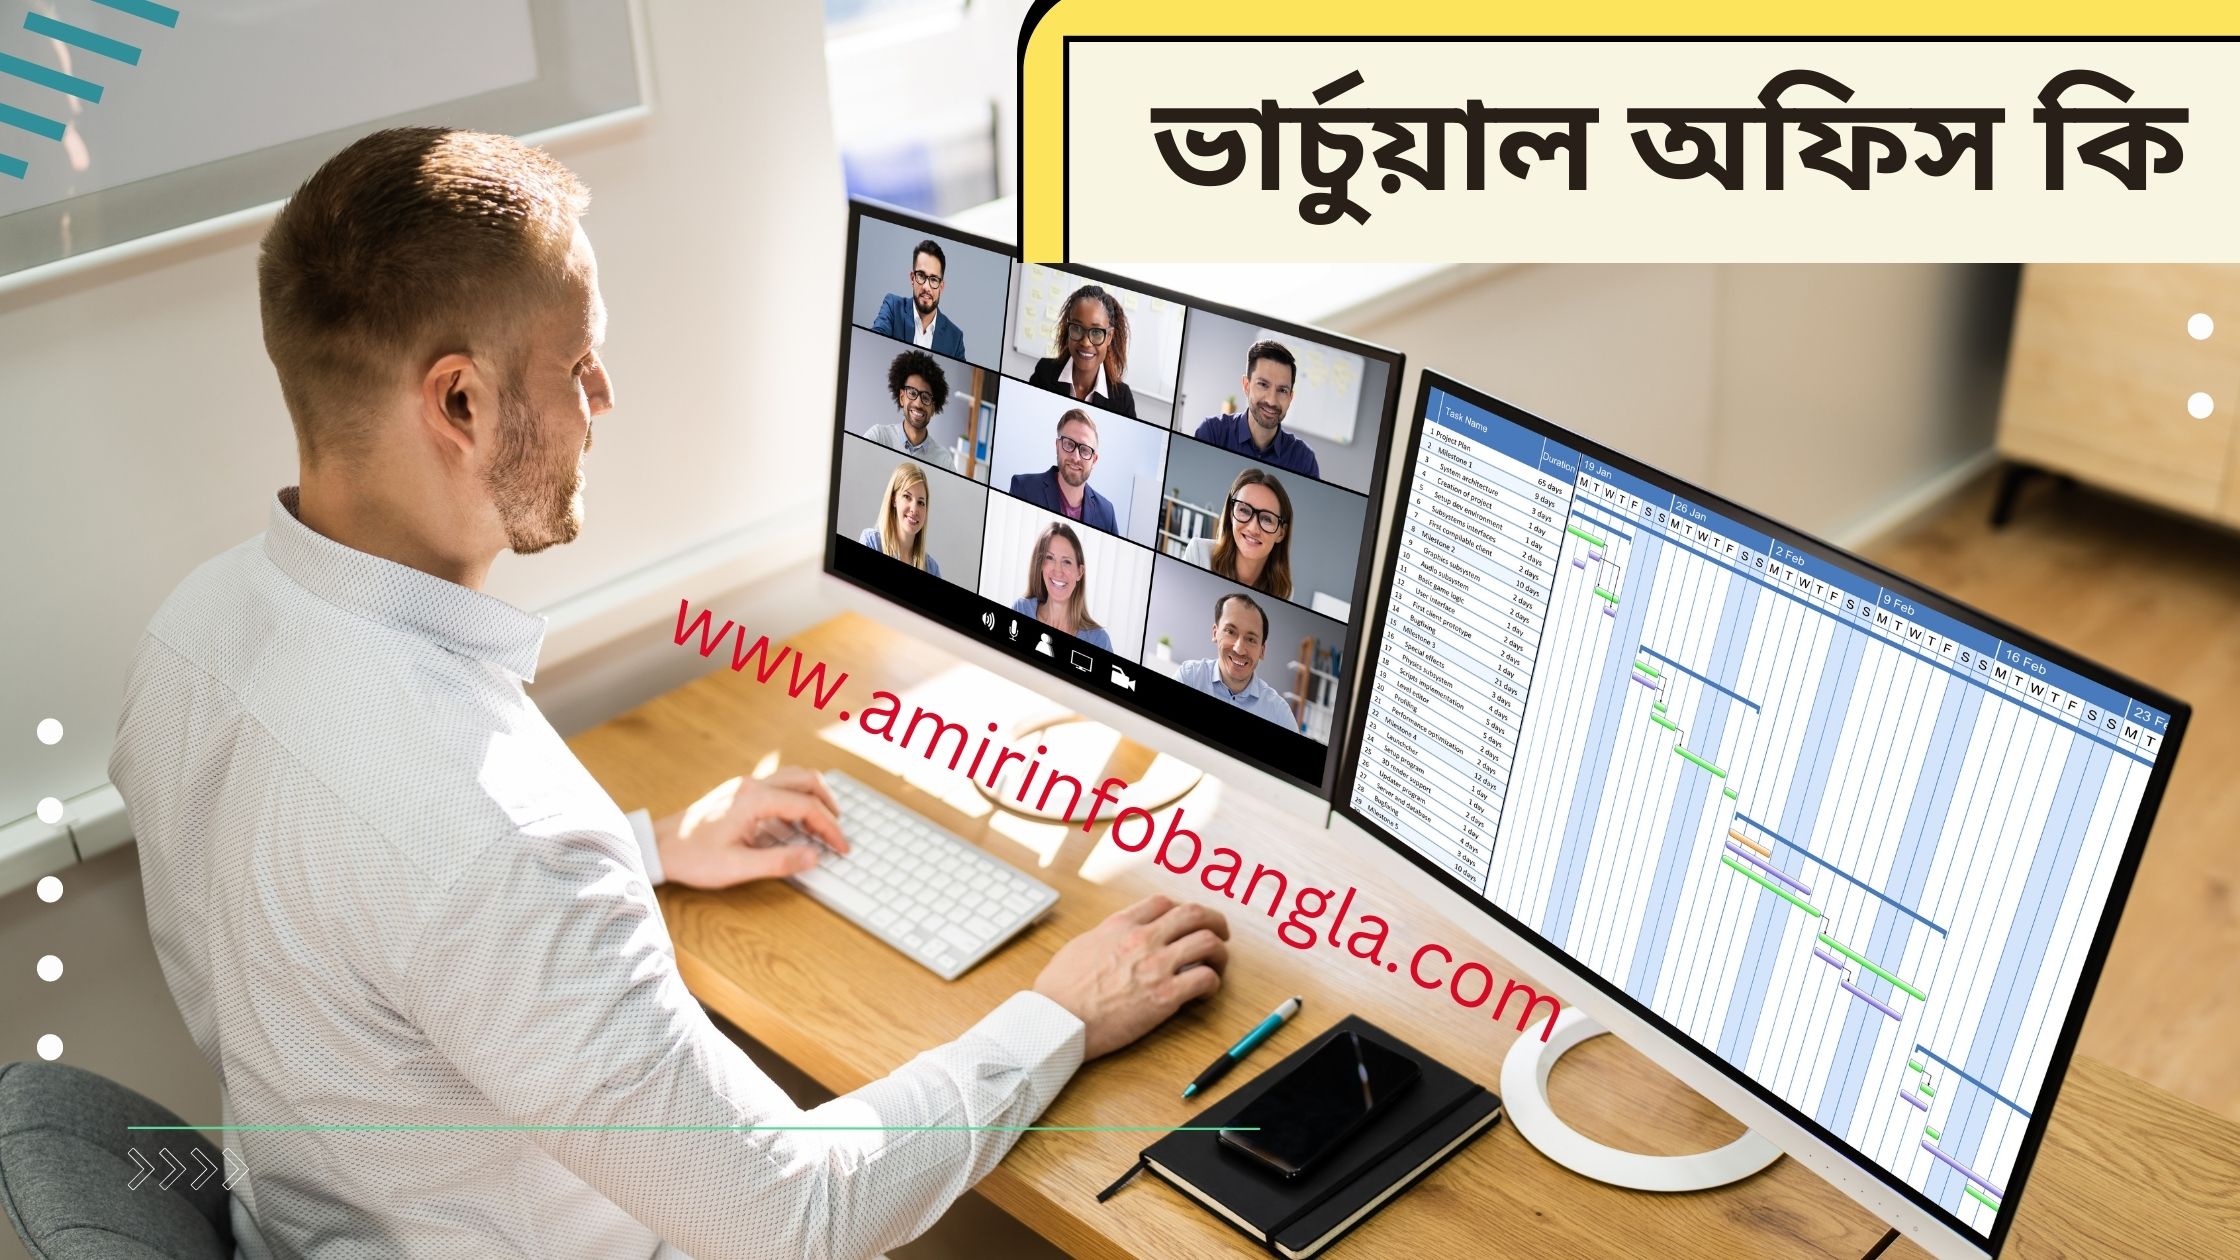 ভার্চুয়াল অফিস কি | ভার্চুয়াল অফিস এর অসুবিধা | What is Virtual office Bangla